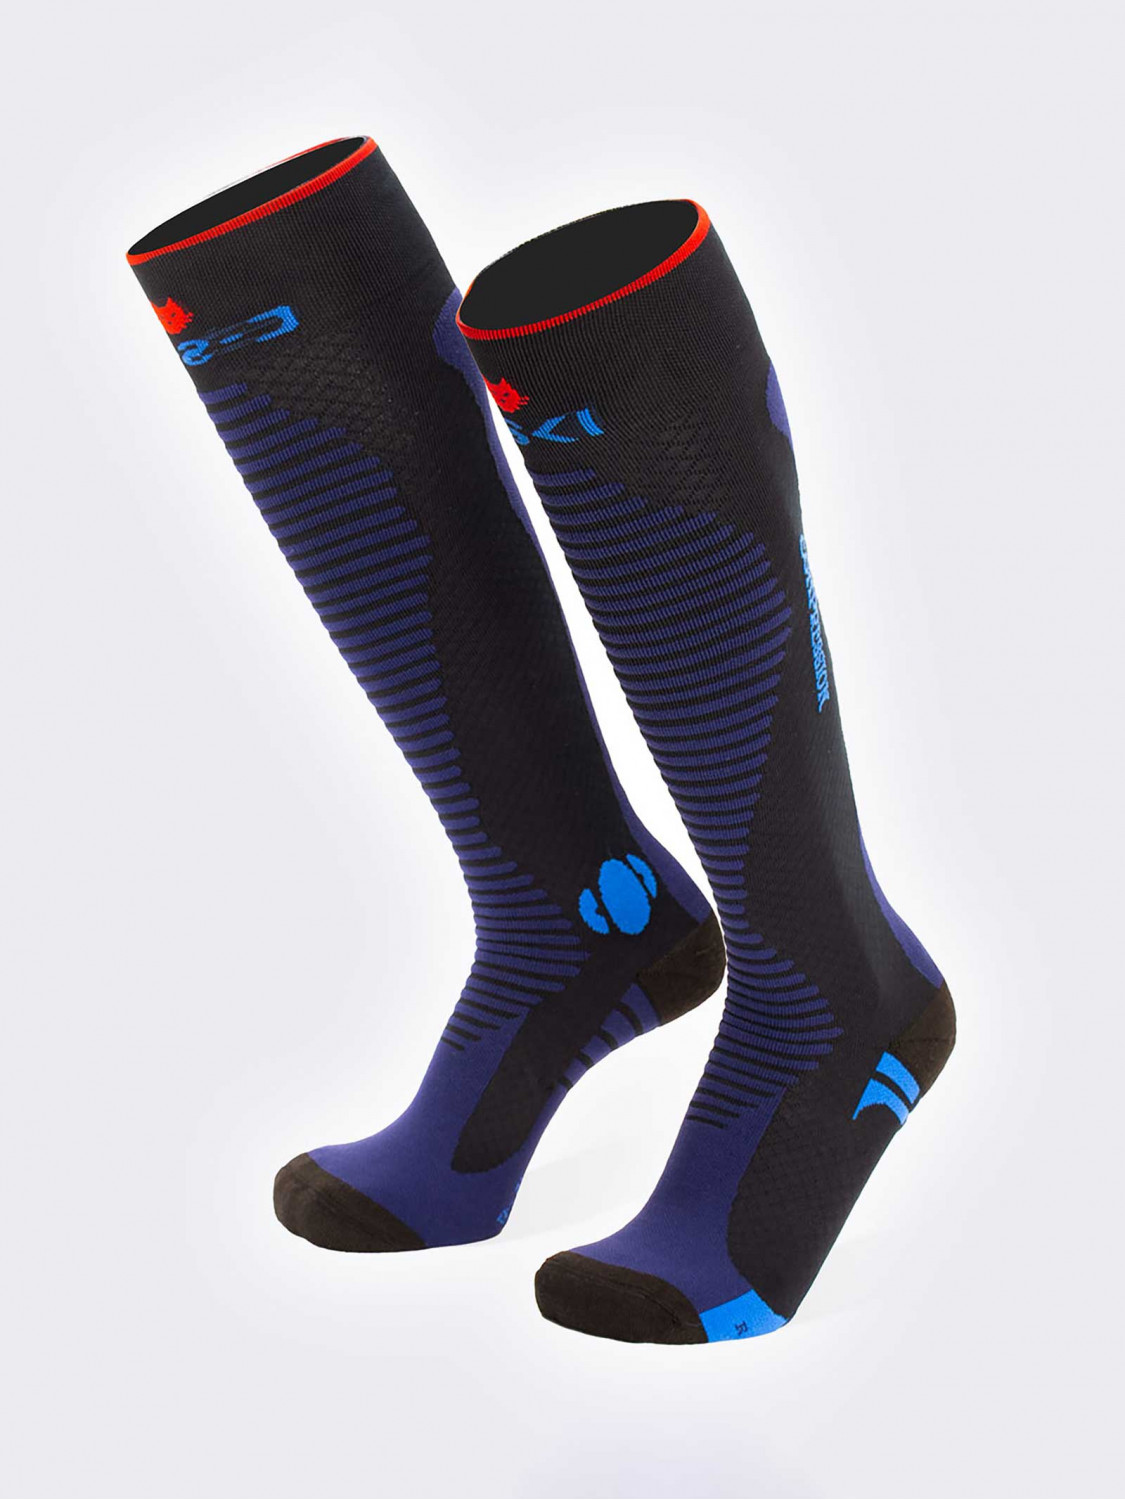 Knee-high ski socks 3D compression in Dryarn